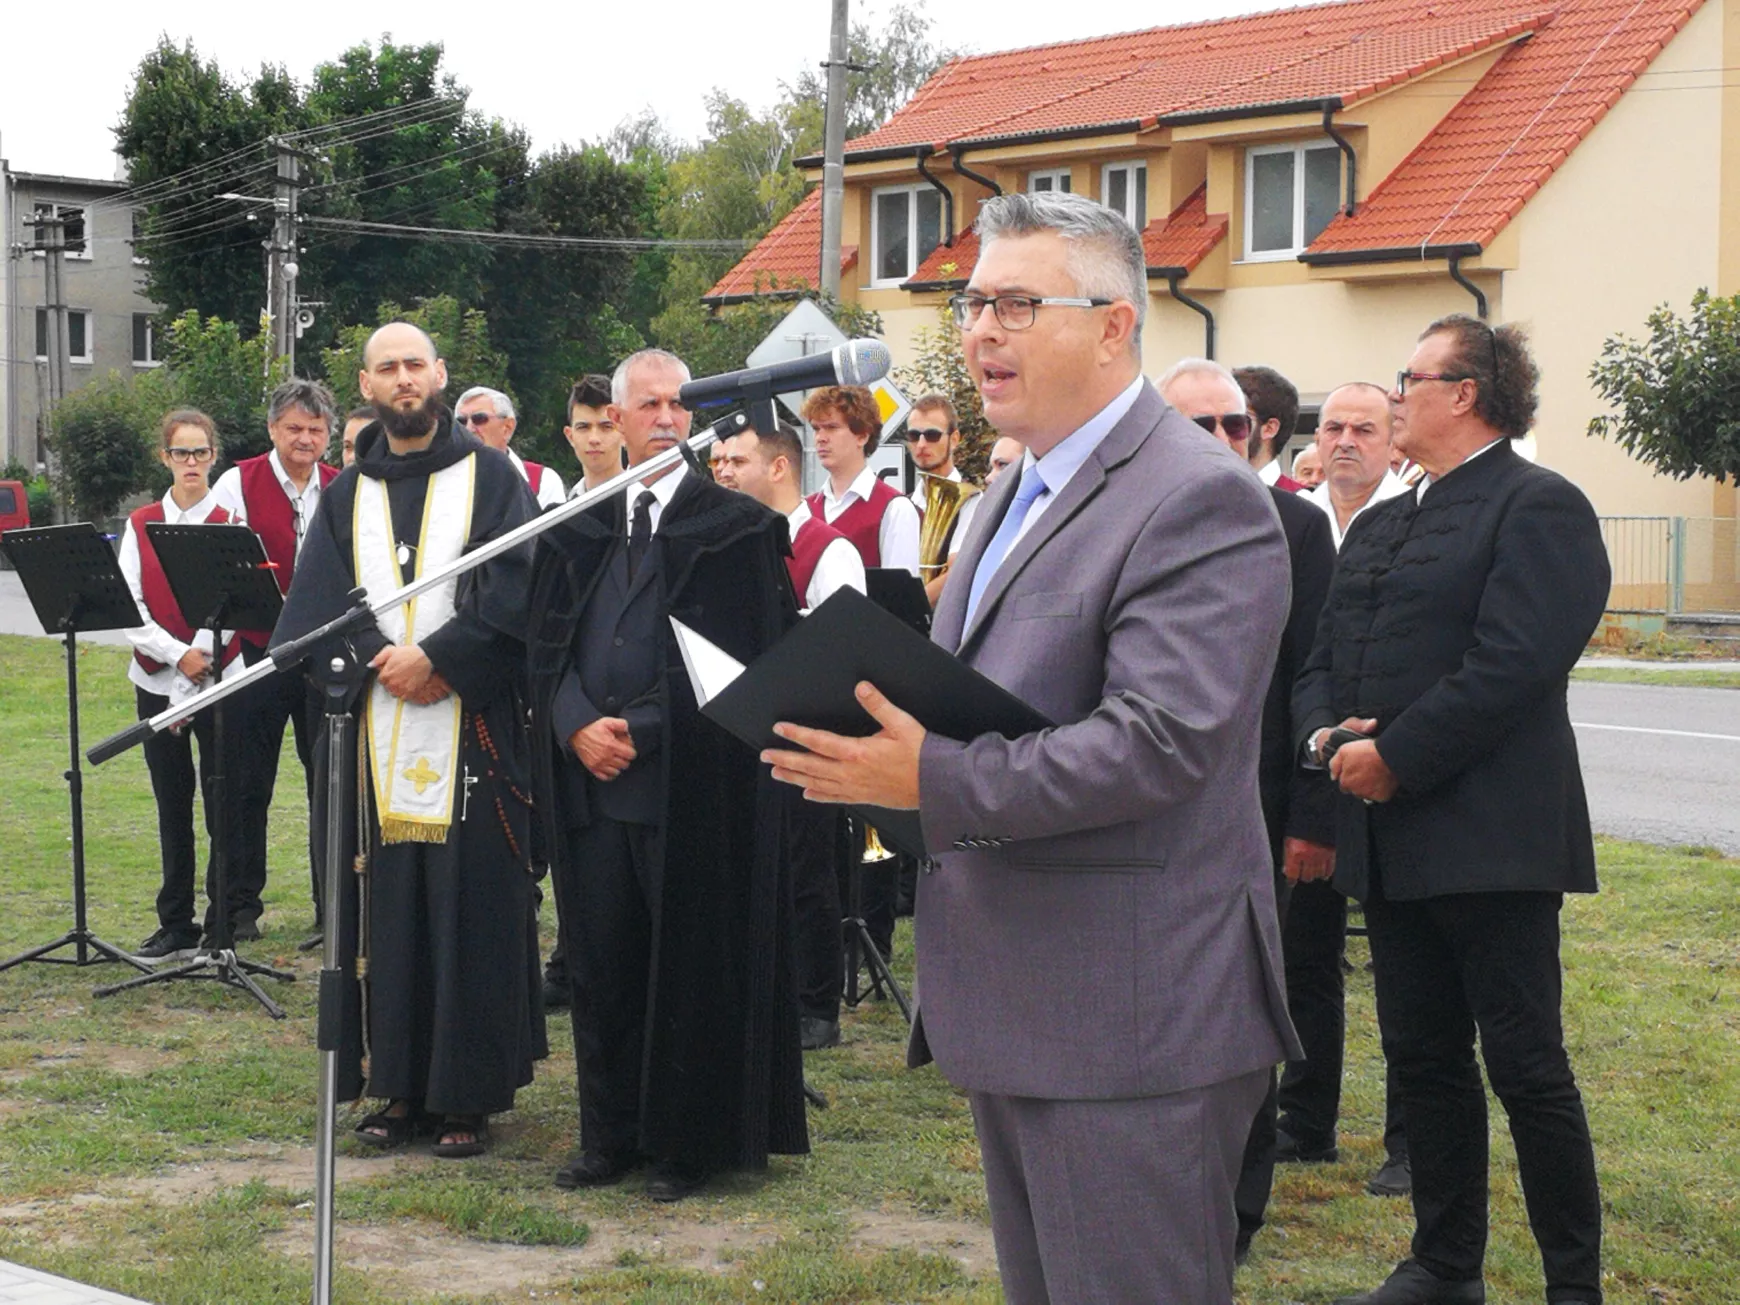 Turul-emlékműavatás a Szent Korona másának jelenlétében: „Kitárt szárnyaival továbbra is óvja a magyar nemzetet...!”